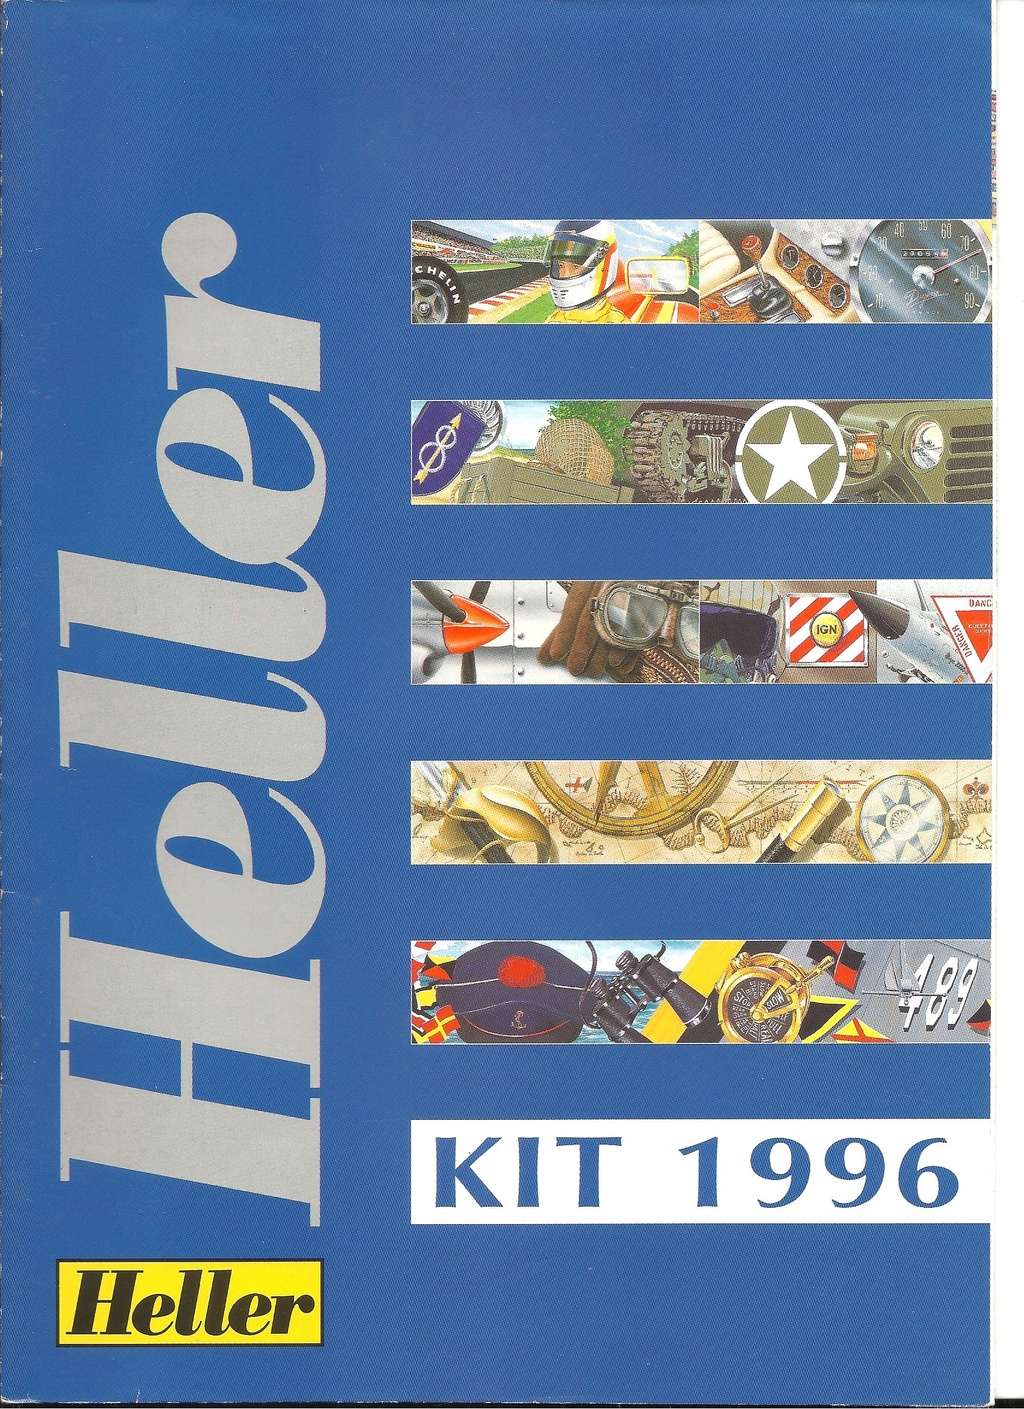 [1996] Catalogue de la gamme KIT 1996 Helle580